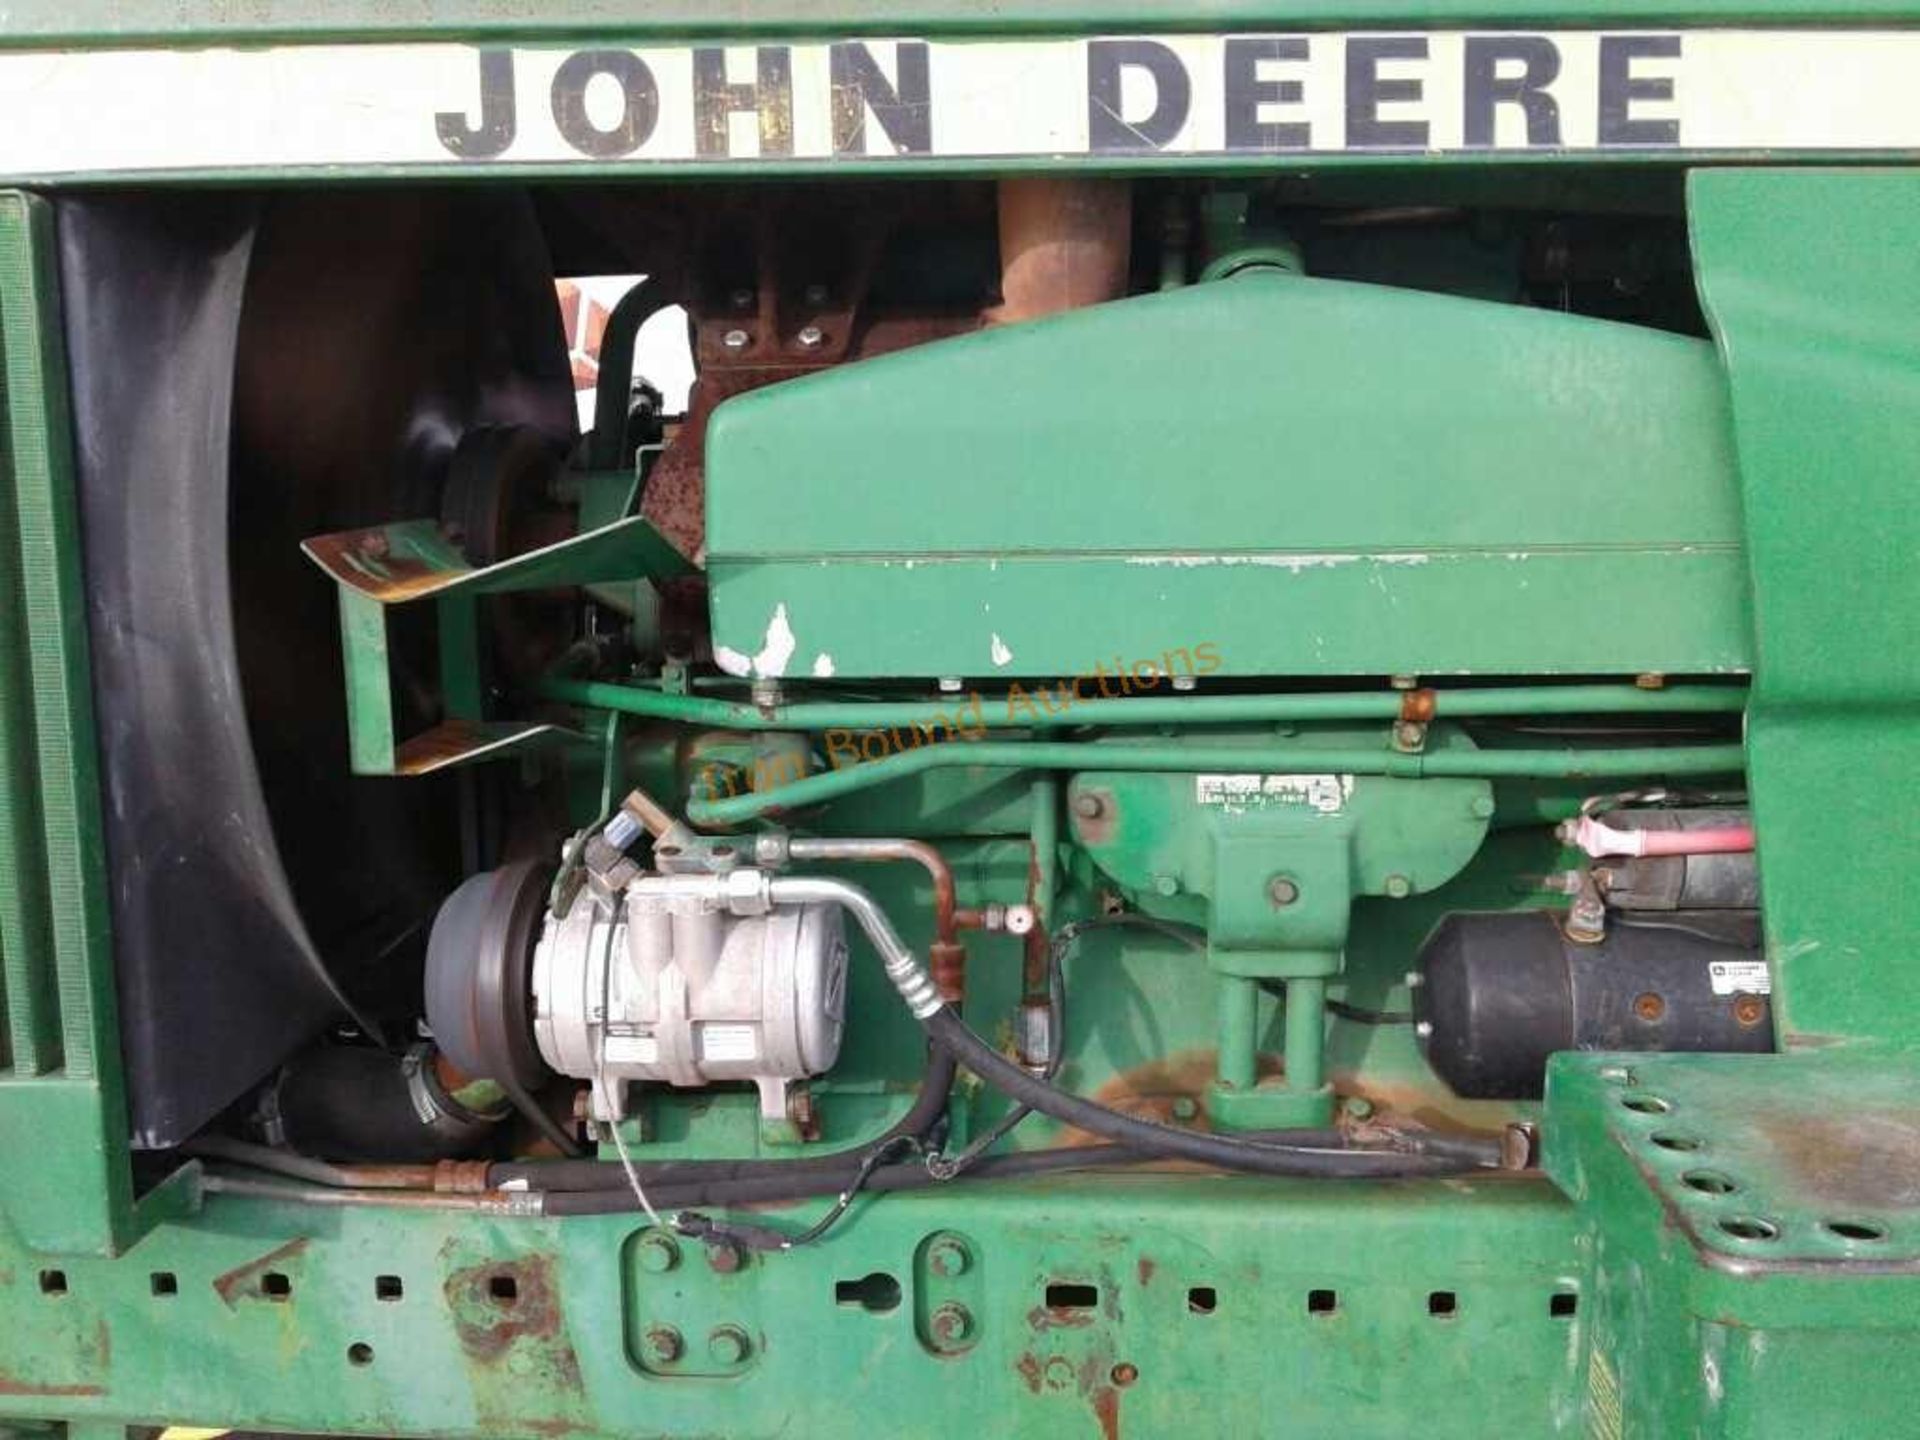 1983 John Deere 4850 Tractor - Image 14 of 18